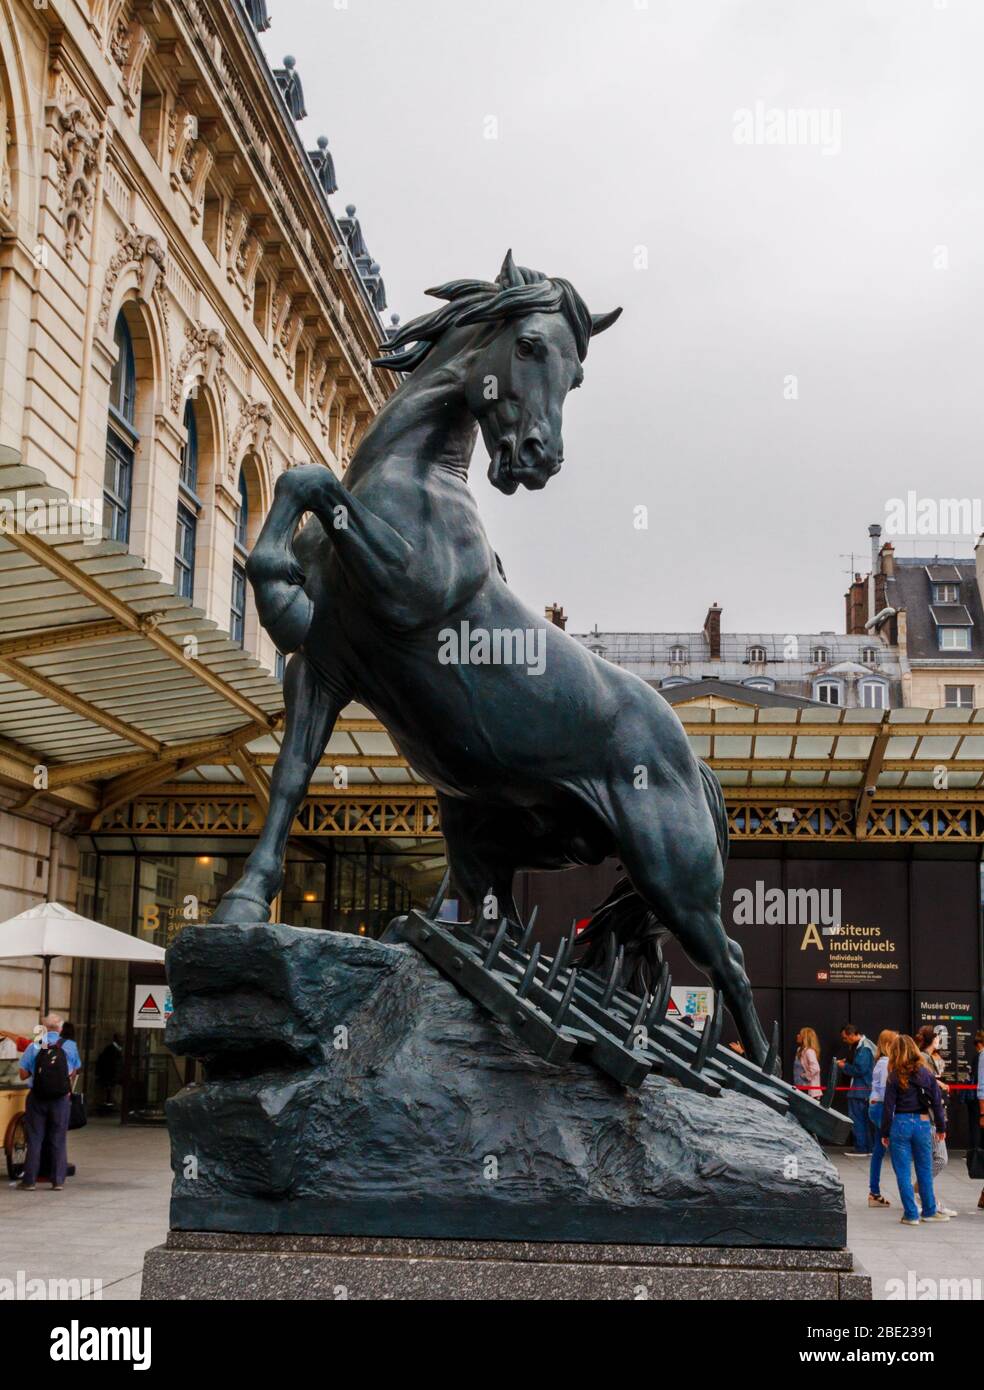 Paris, Frankreich - 4. Juni 2018: Statue 'Pferd mit Harge' ('Cheval a la herse') auf der Esplanade des Musée d'Orsay. Stockfoto